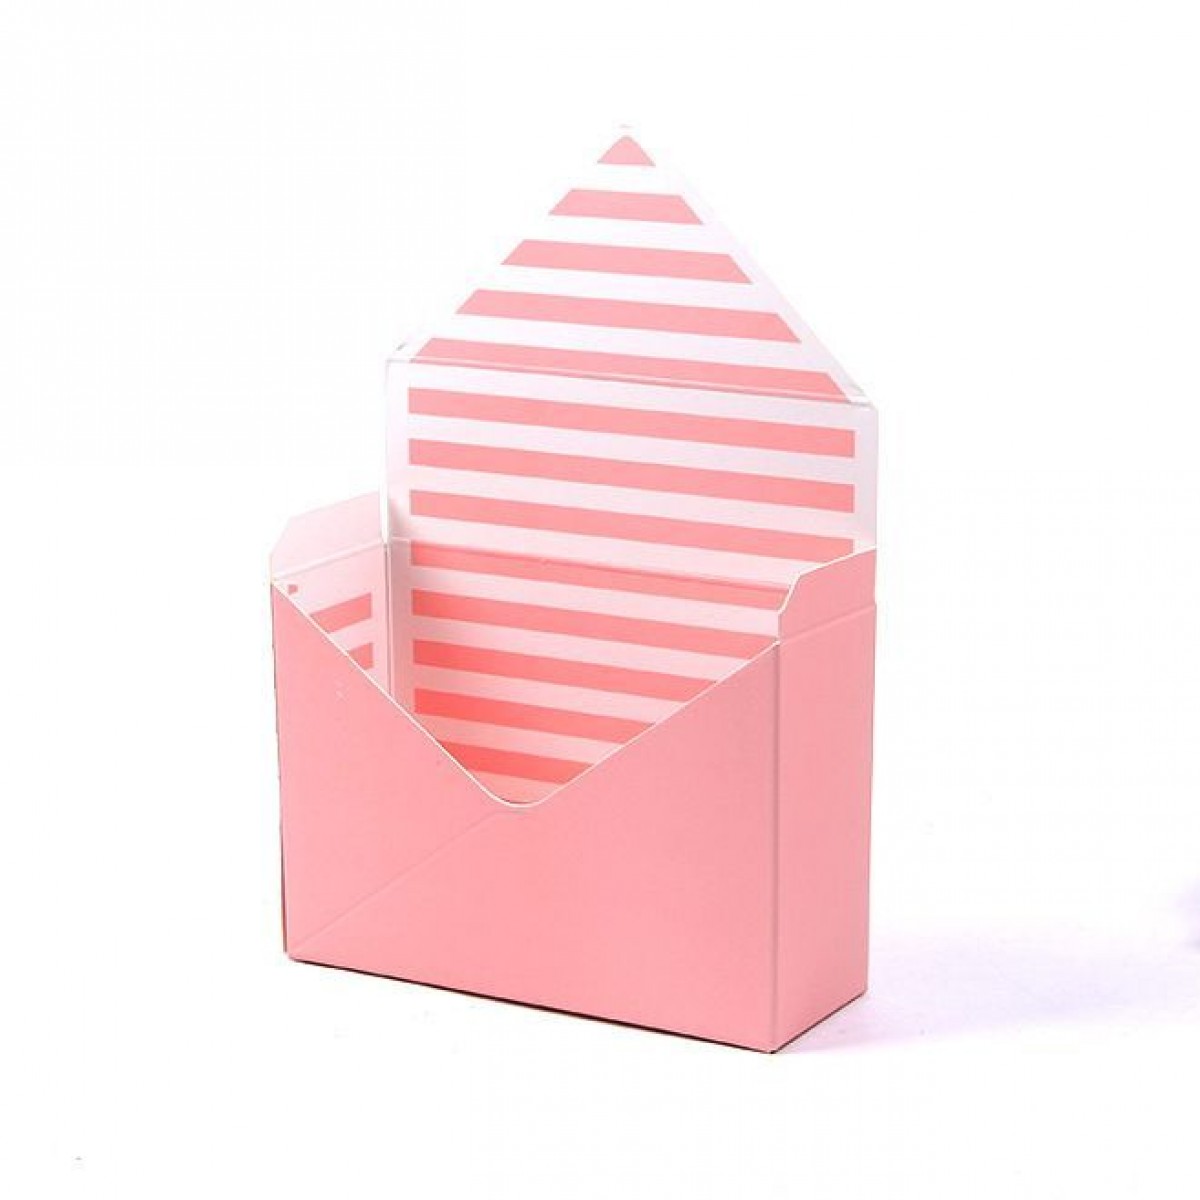 5073 Candy Stripes Pink & White Paper Envelope (10 Pcs)